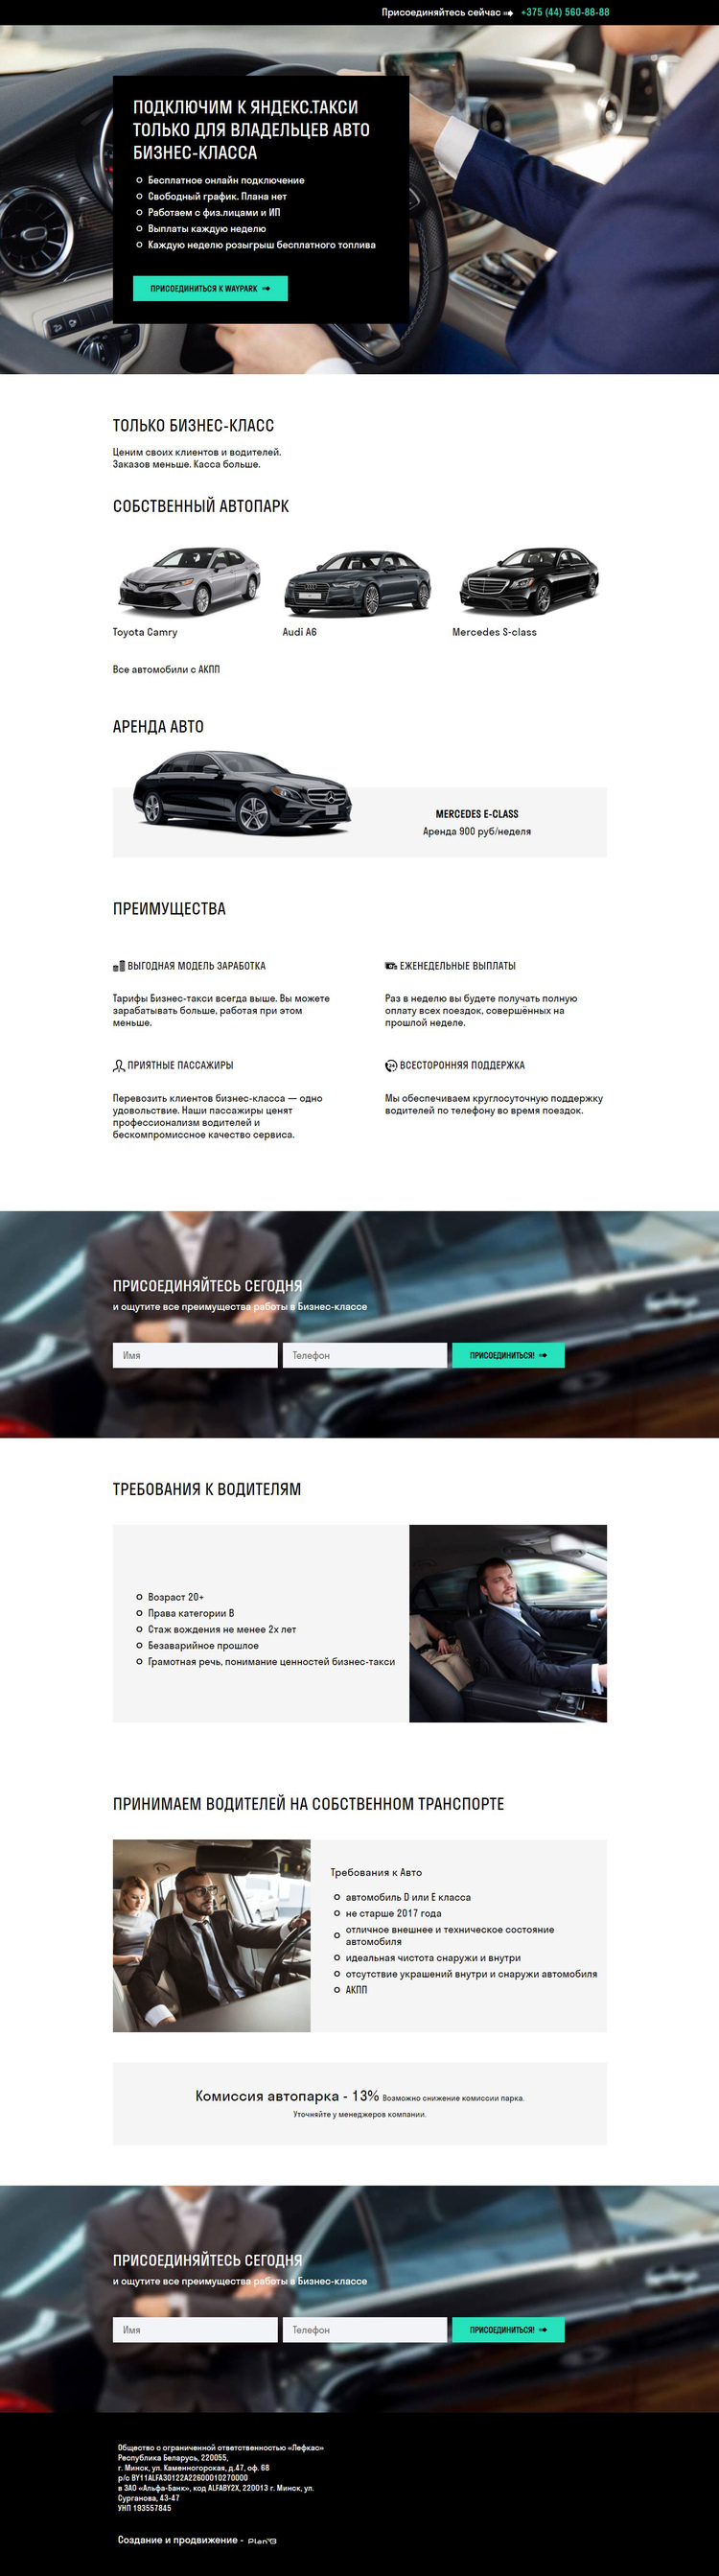 Сайт таксопарка в Минске